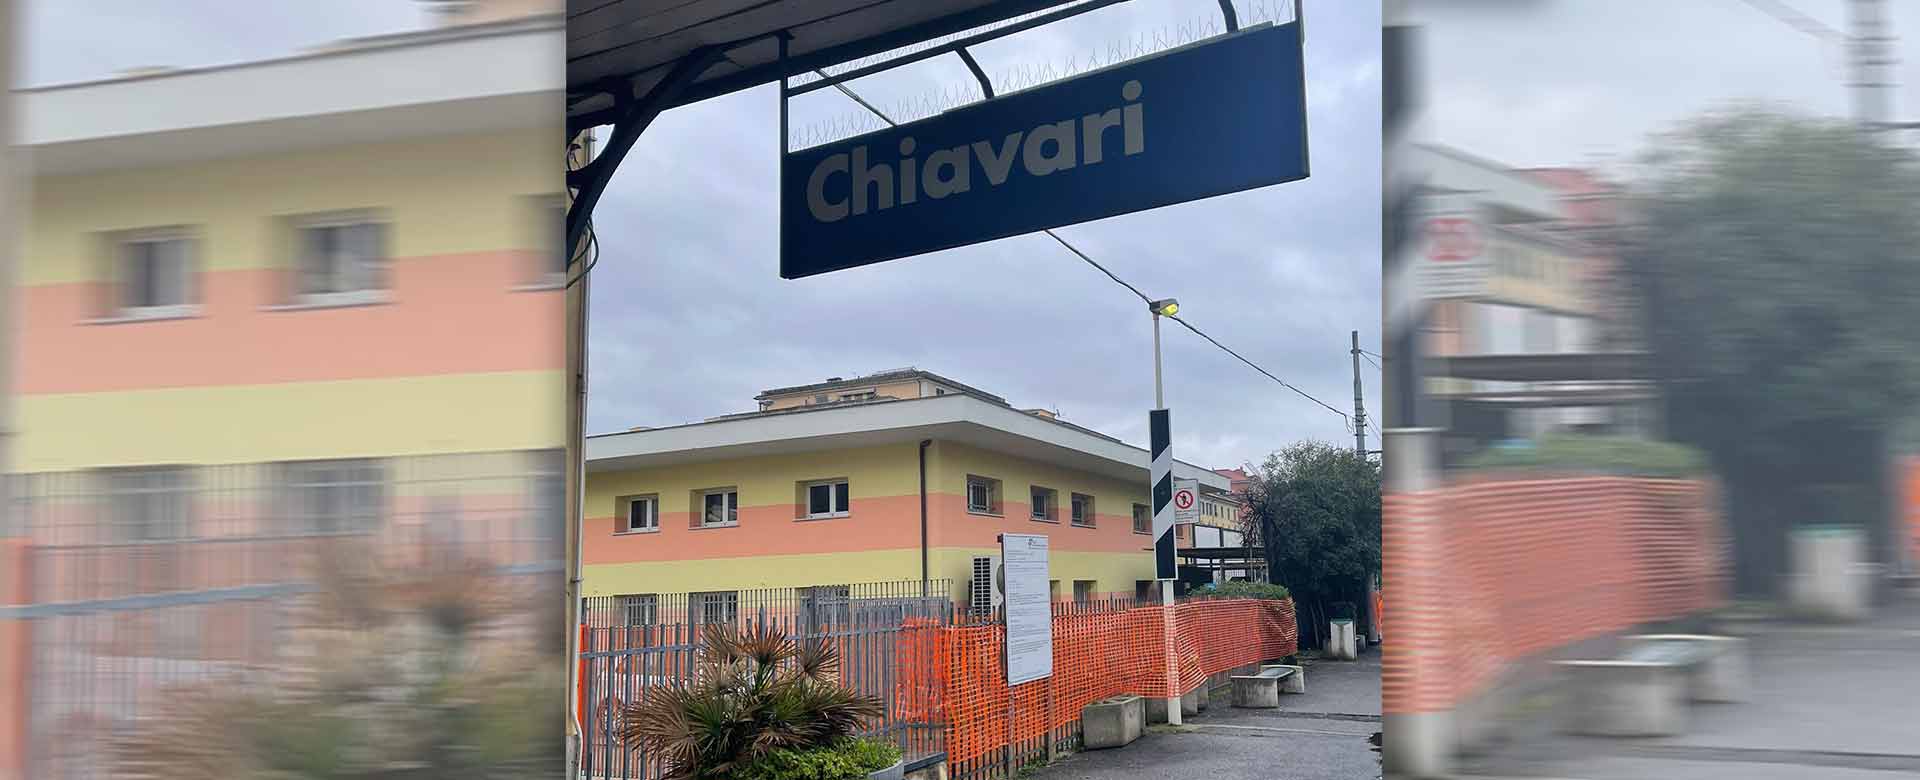 Immagine della stazione di Chiavari